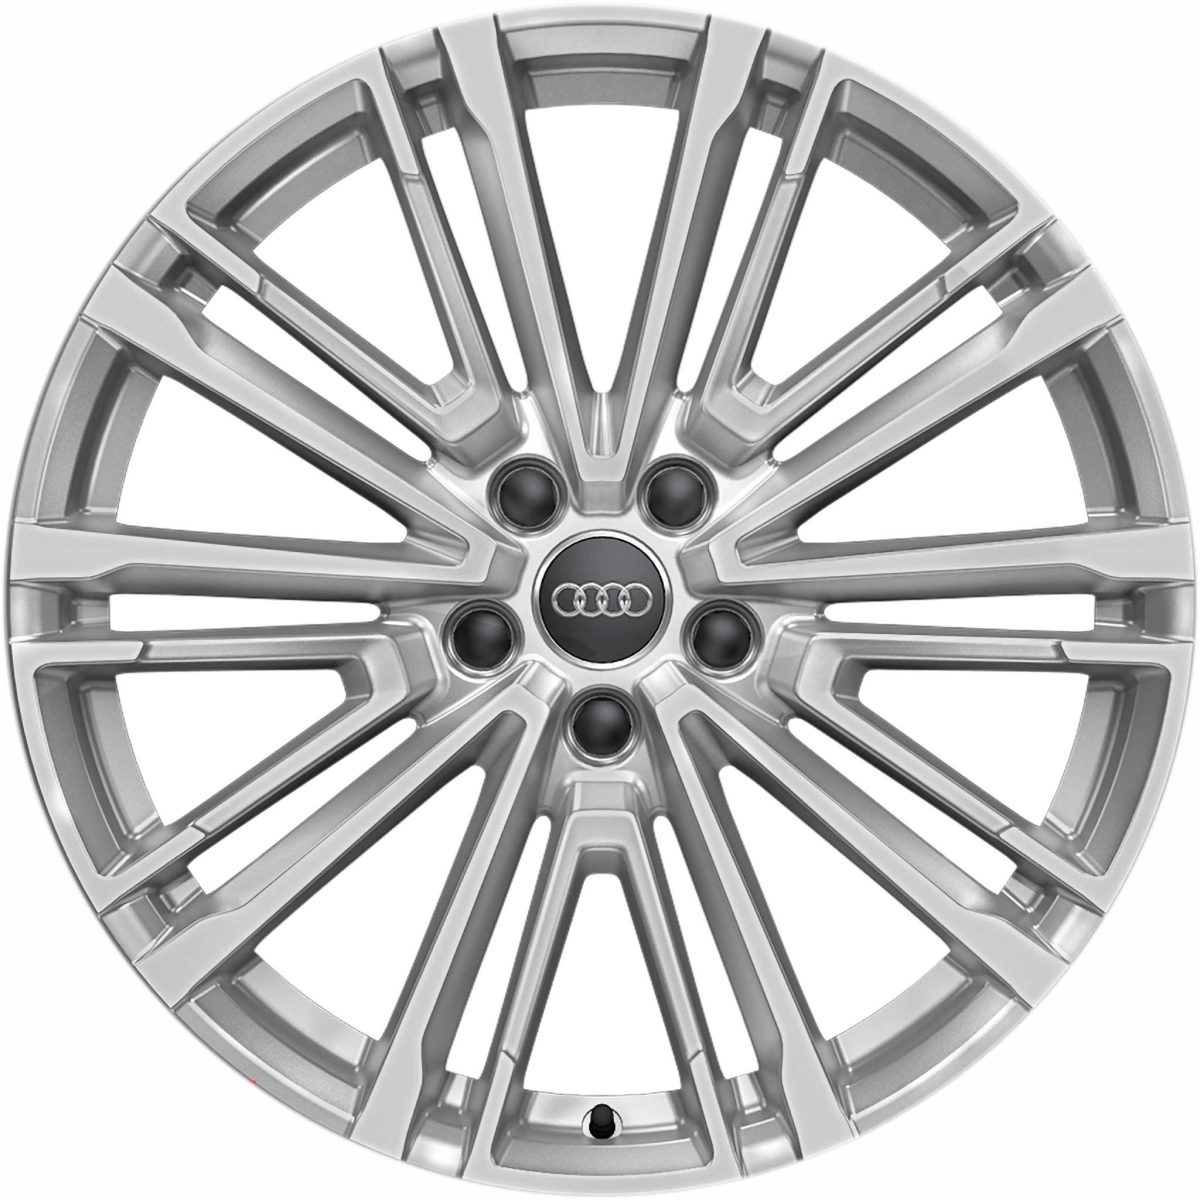 Genuine Audi A5 8W 10 V Spoke 19" Inch Alloy Wheels with Silver Finish 8W0 601 025 CC